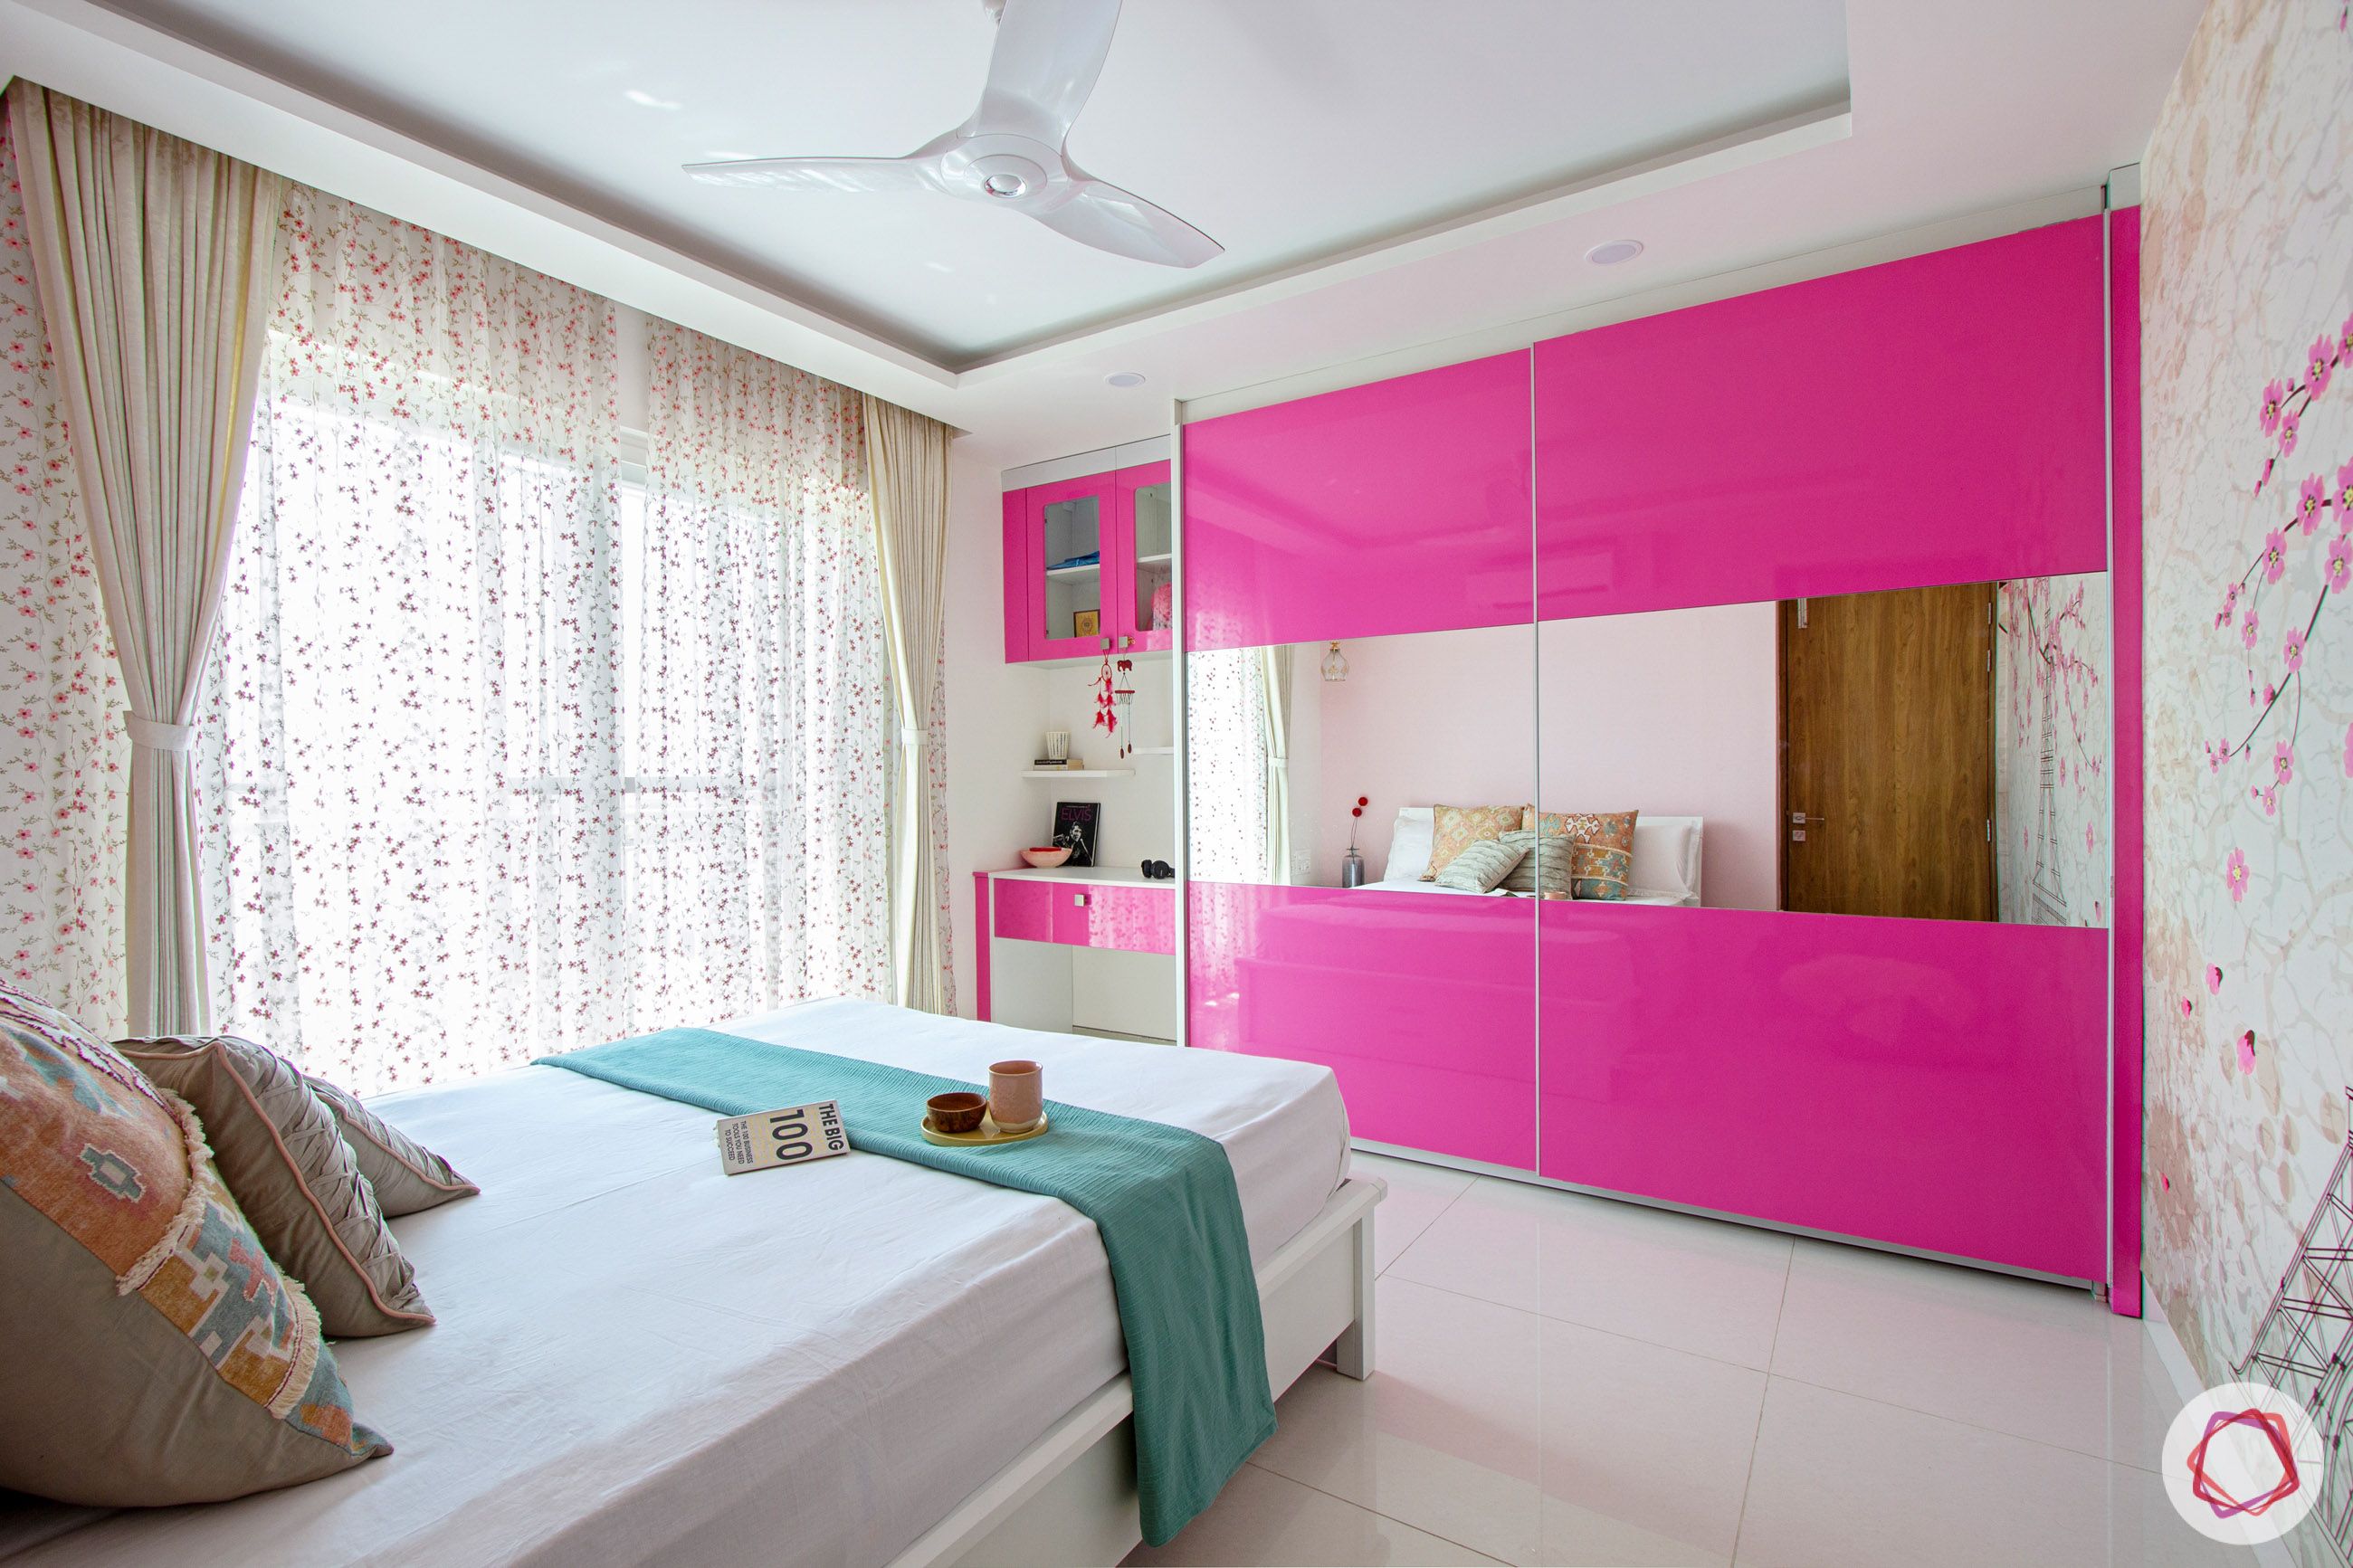 snn-raj-grandeur-girls bedroom-pink wardrobe